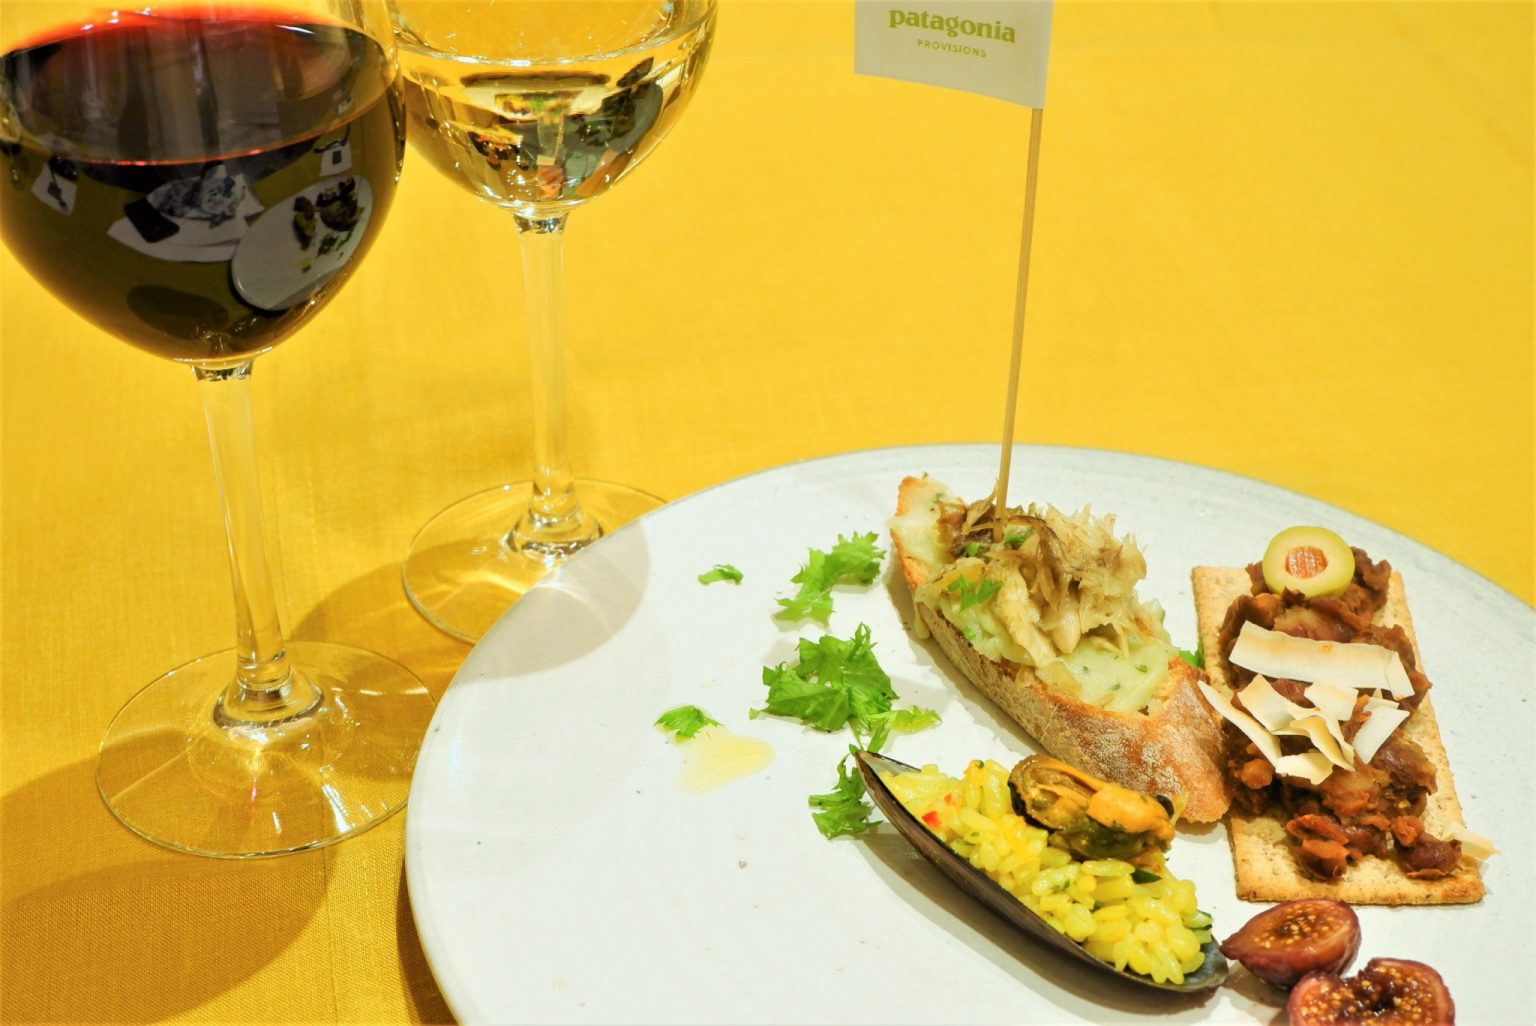 ドメーヌ・カズのワインとパタゴニアのオーガニック食品とのマリアージュ